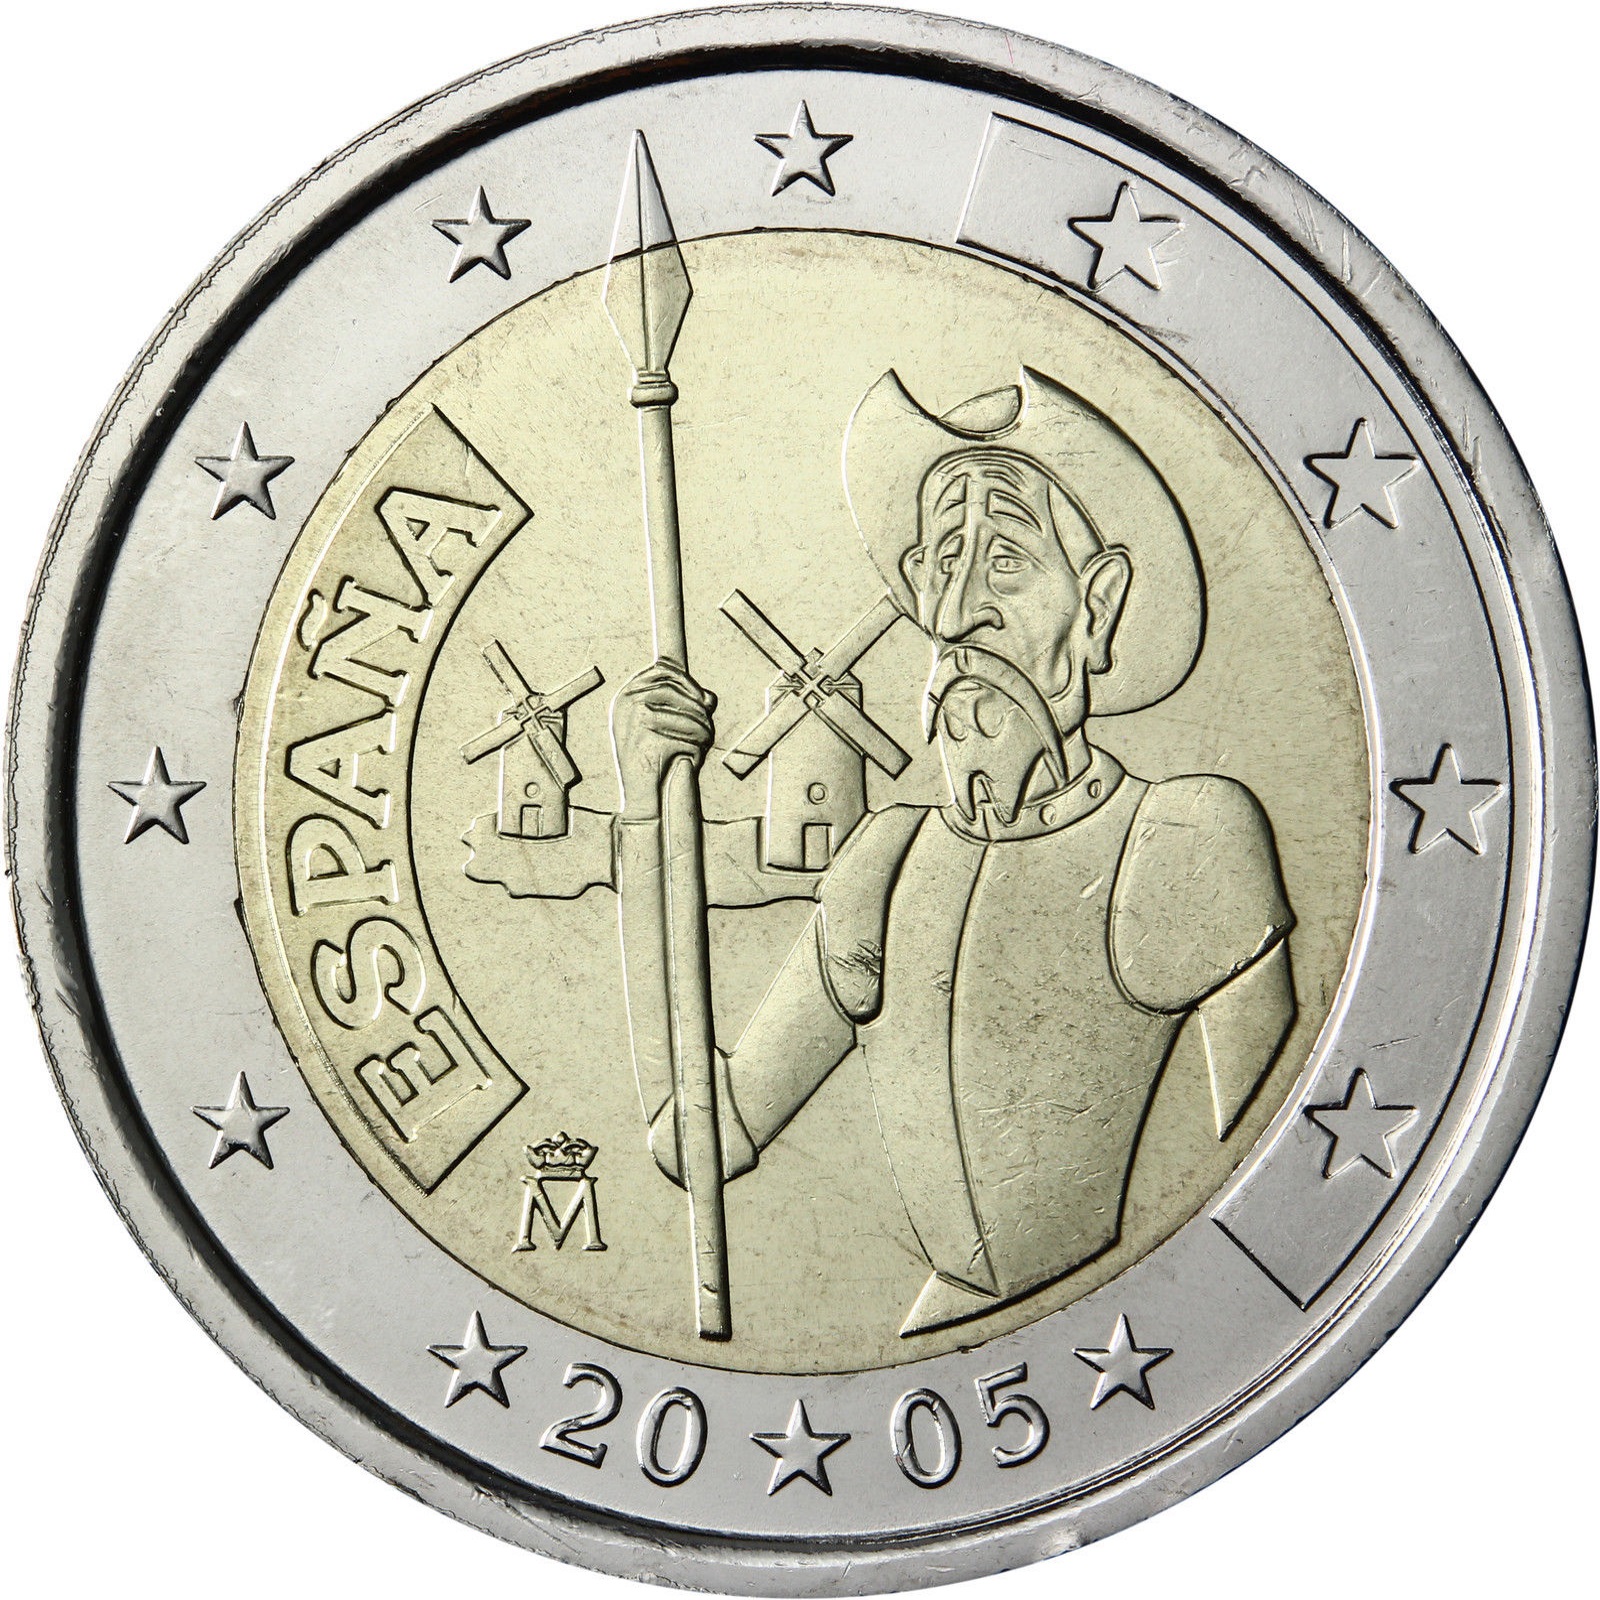 Euro coins photo